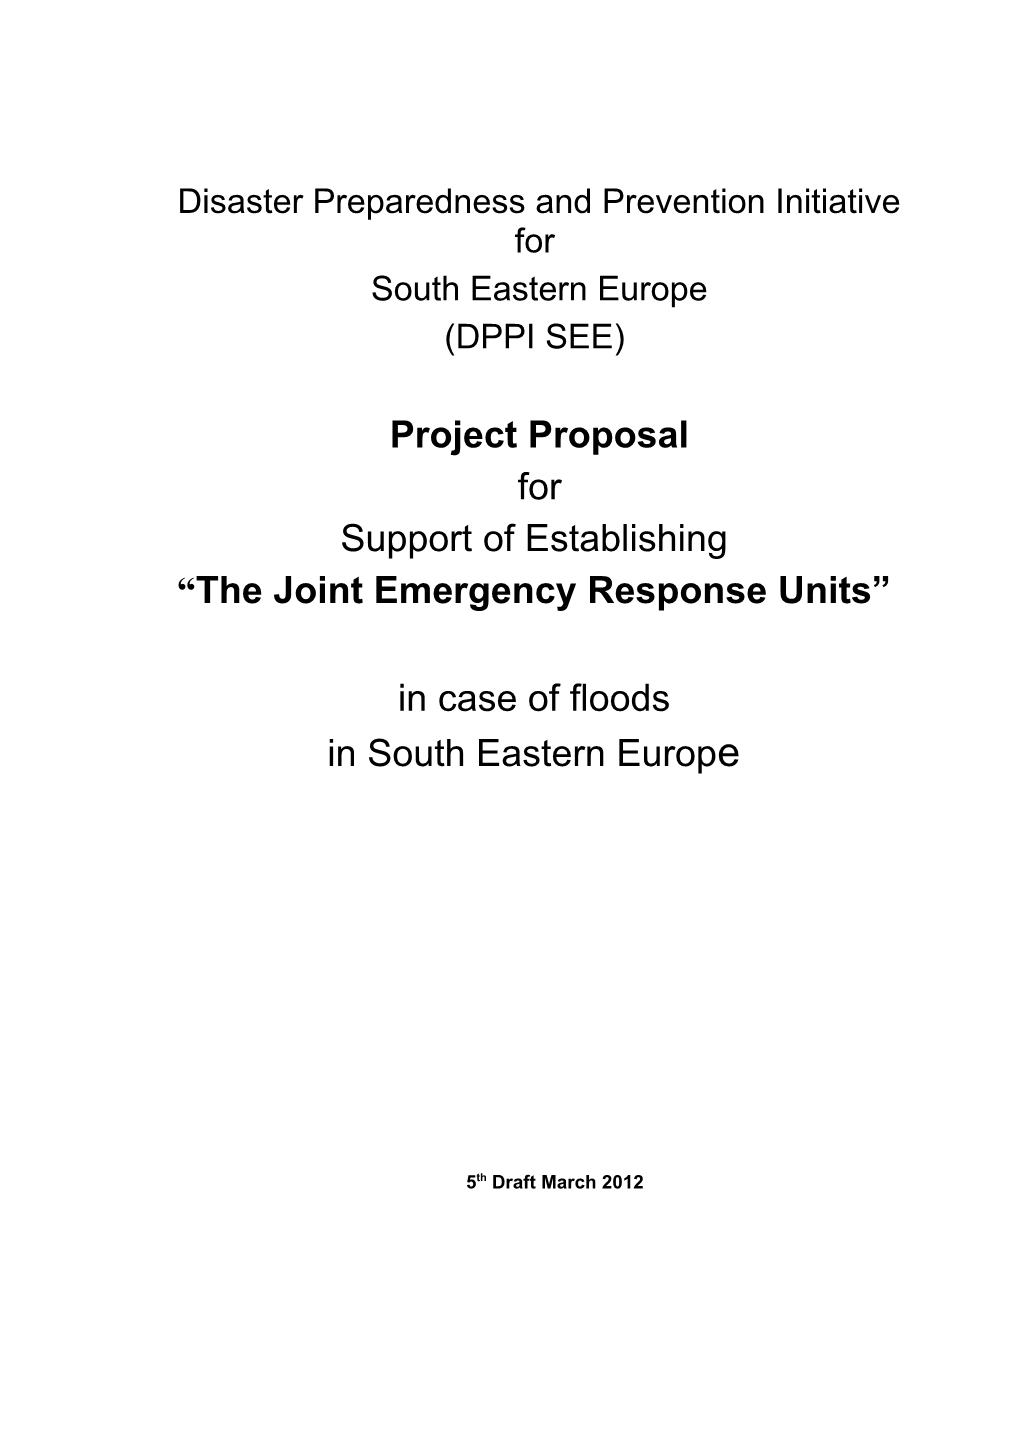 JERU Project Proposal